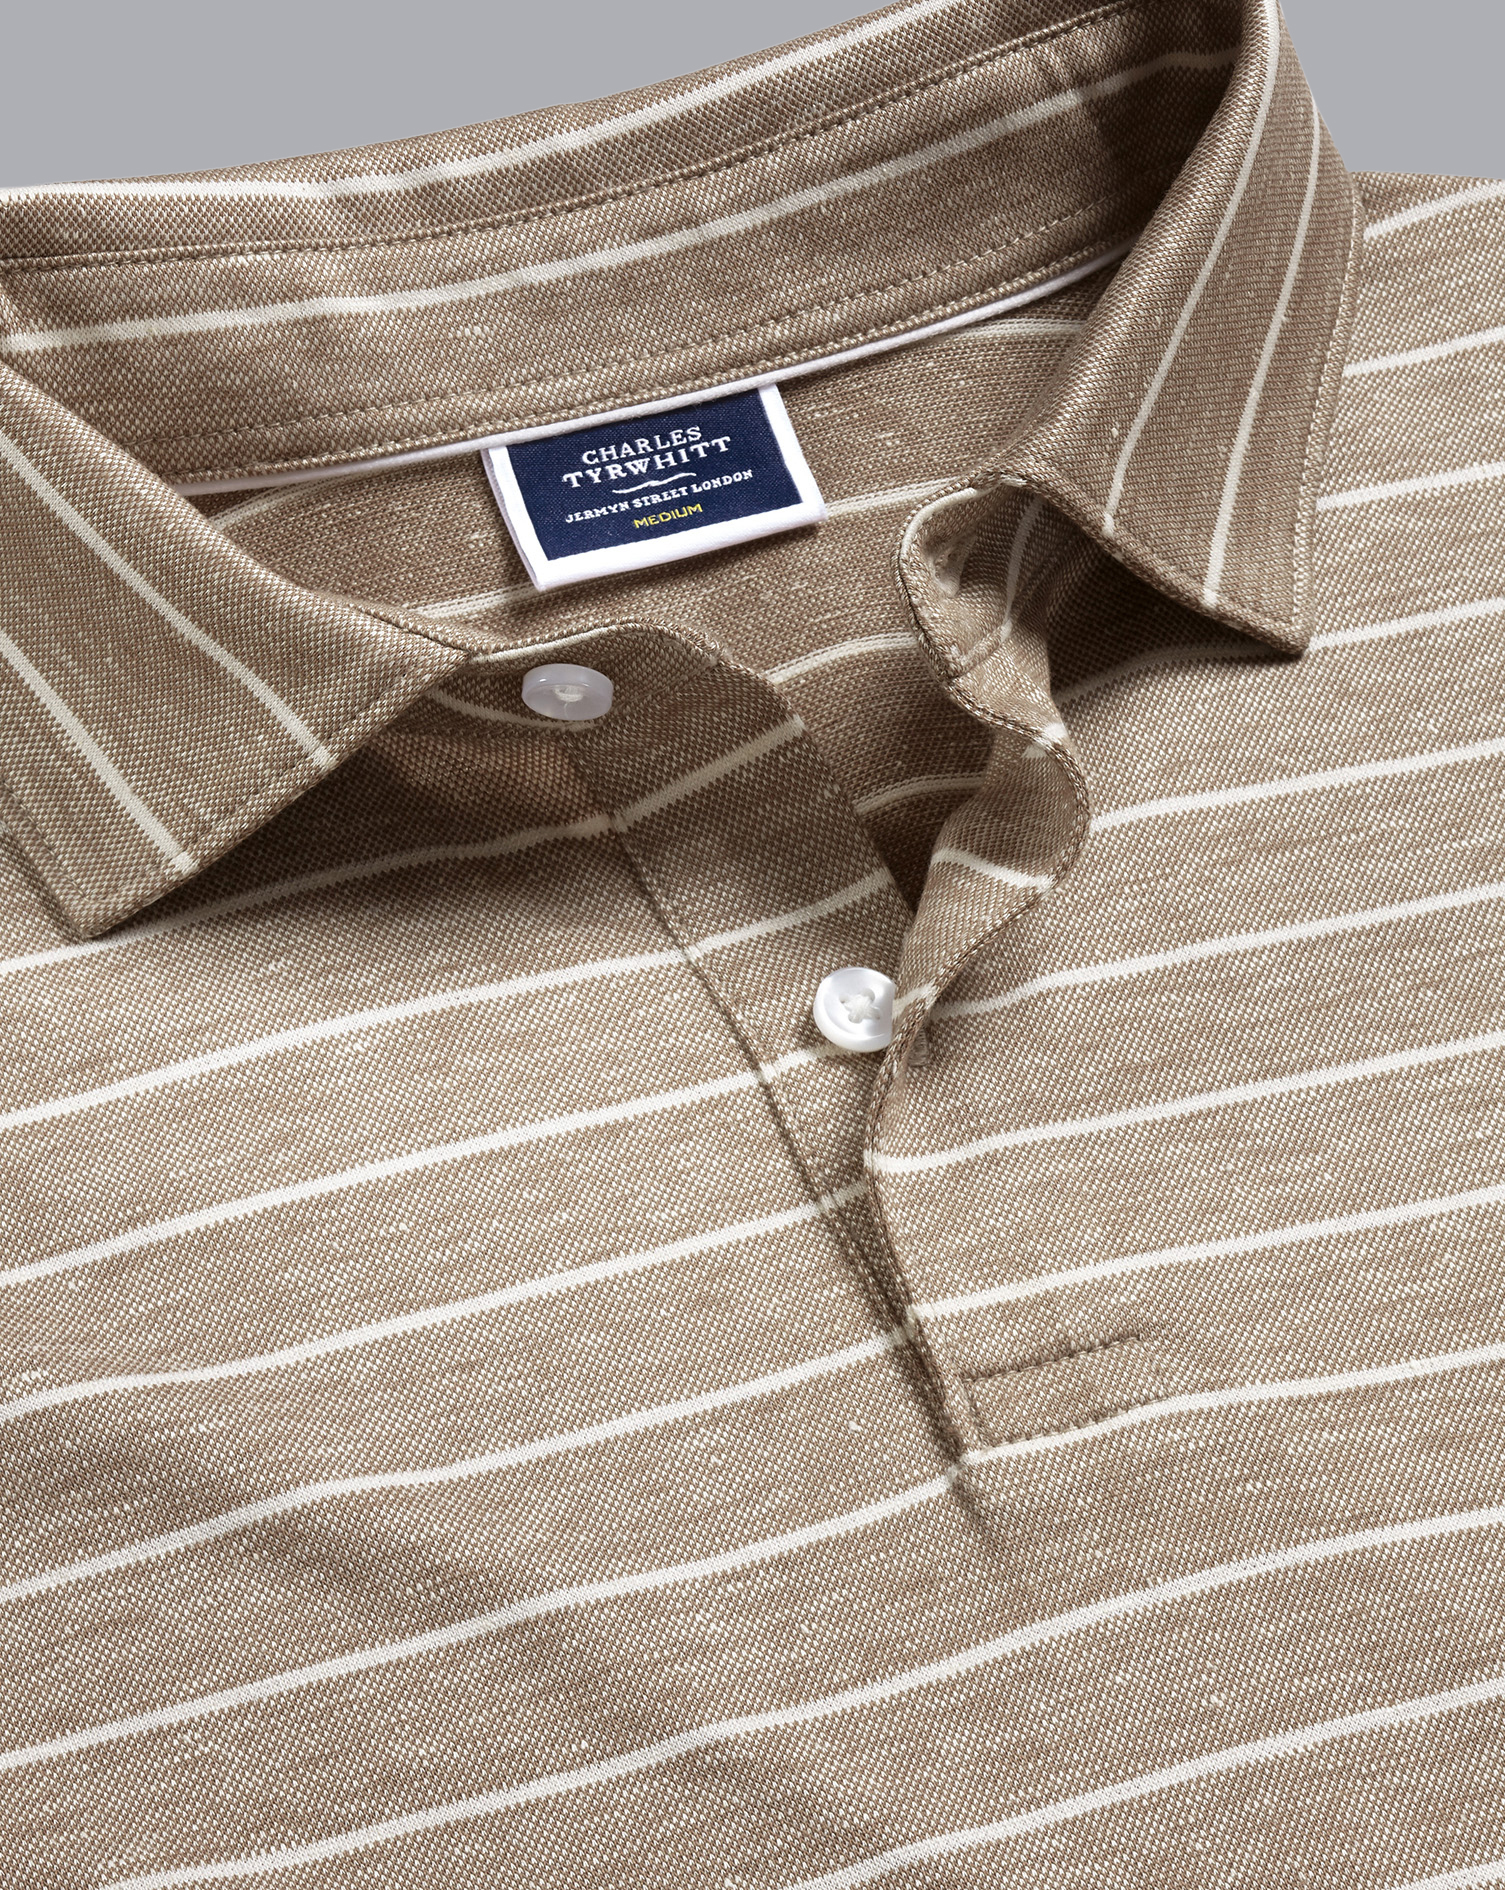 Men's Charles Tyrwhitt Linen Cotton Stripe Polo Shirt - Mocha Brown Size XXL Cotton/Linen
